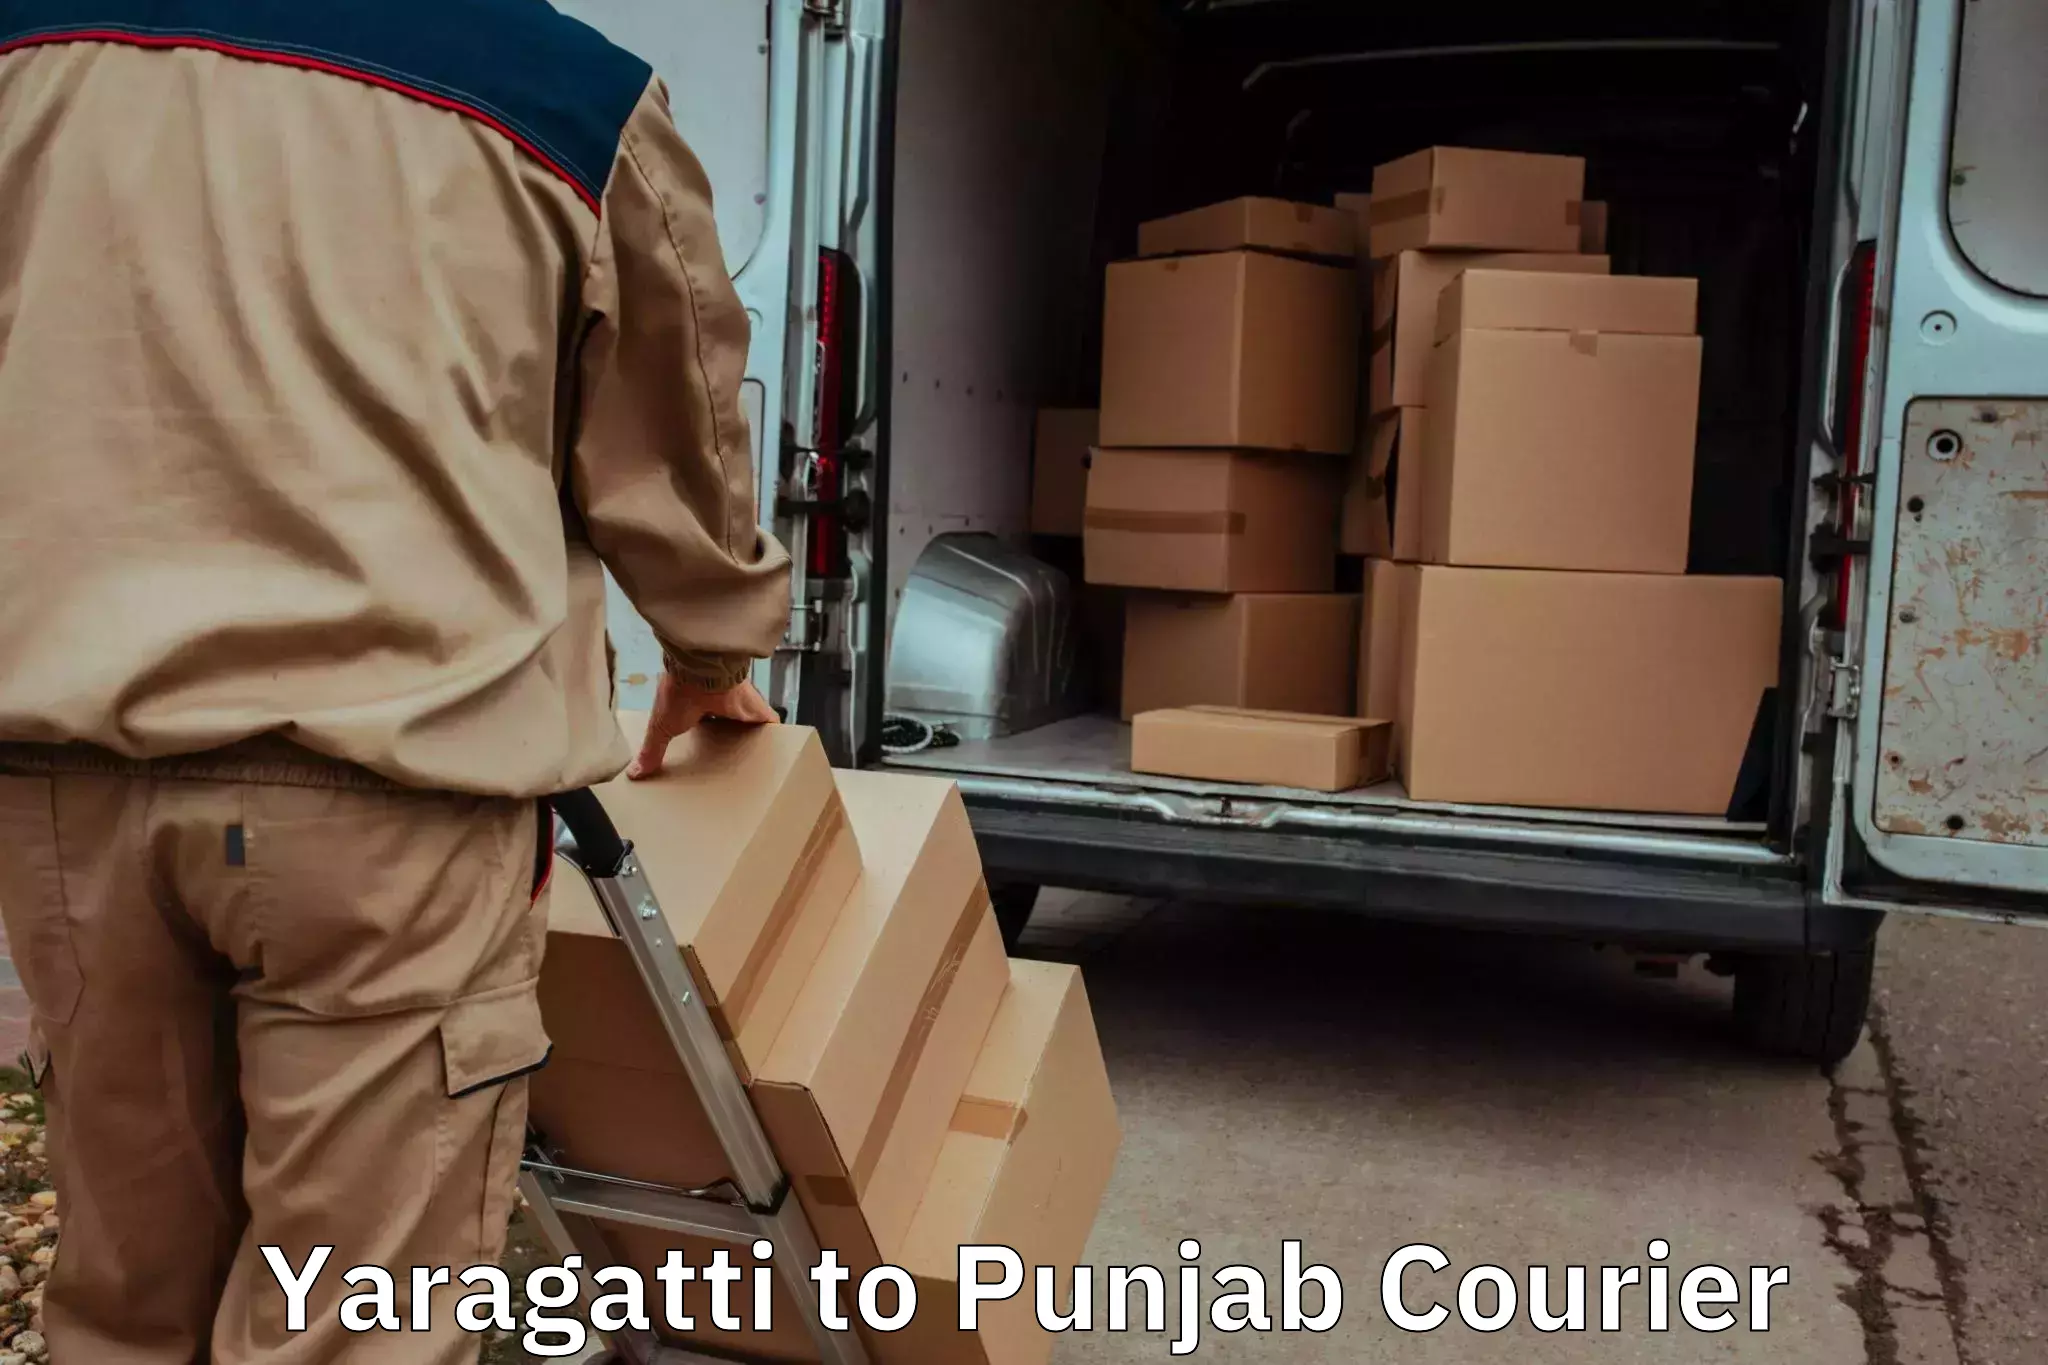 Furniture transport specialists Yaragatti to Rajpura